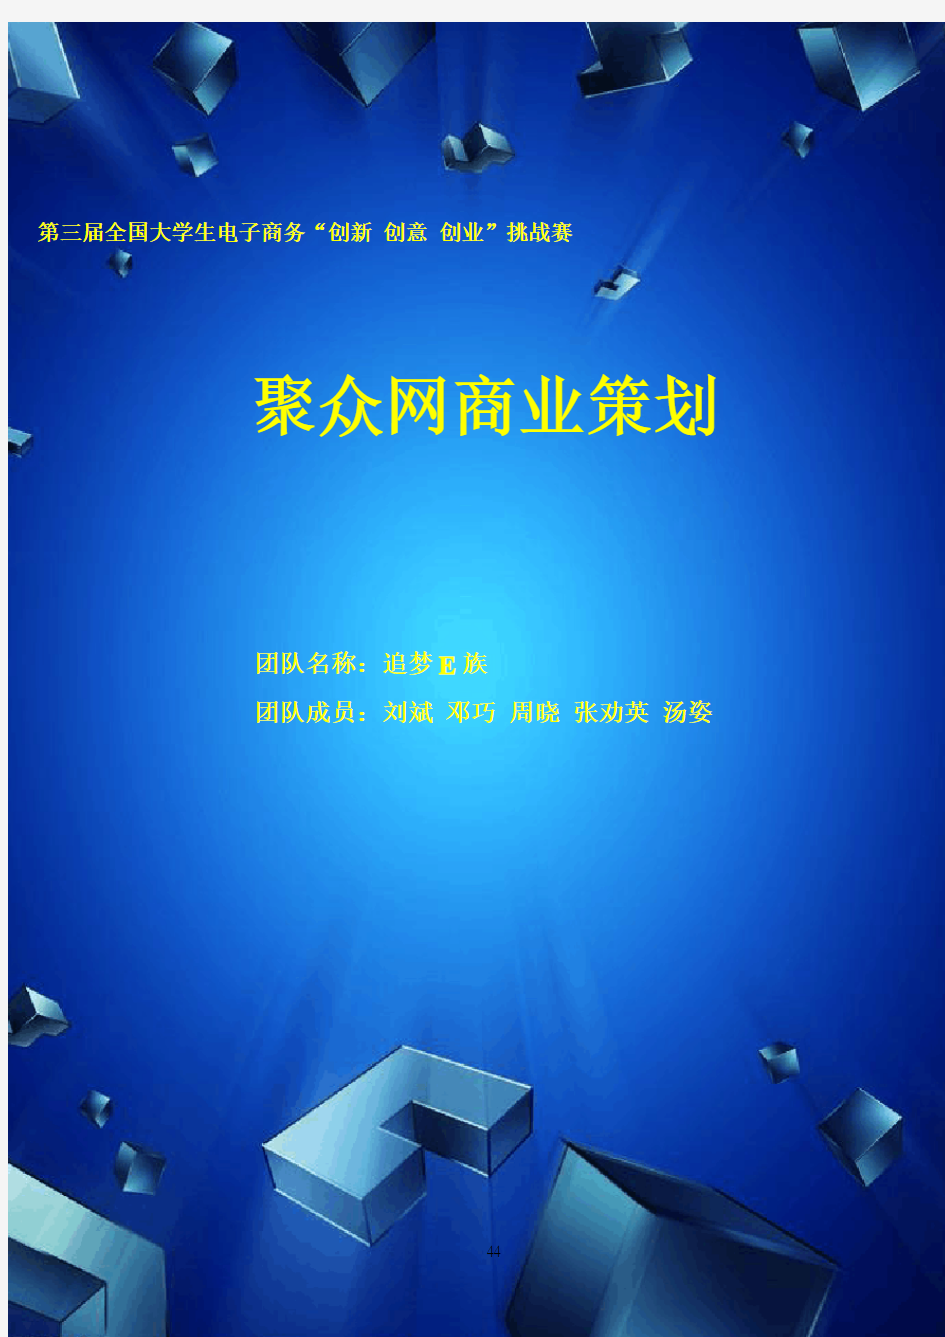 第三届电子商务三创大赛湖南省特等奖作品《聚众网商业策划书》